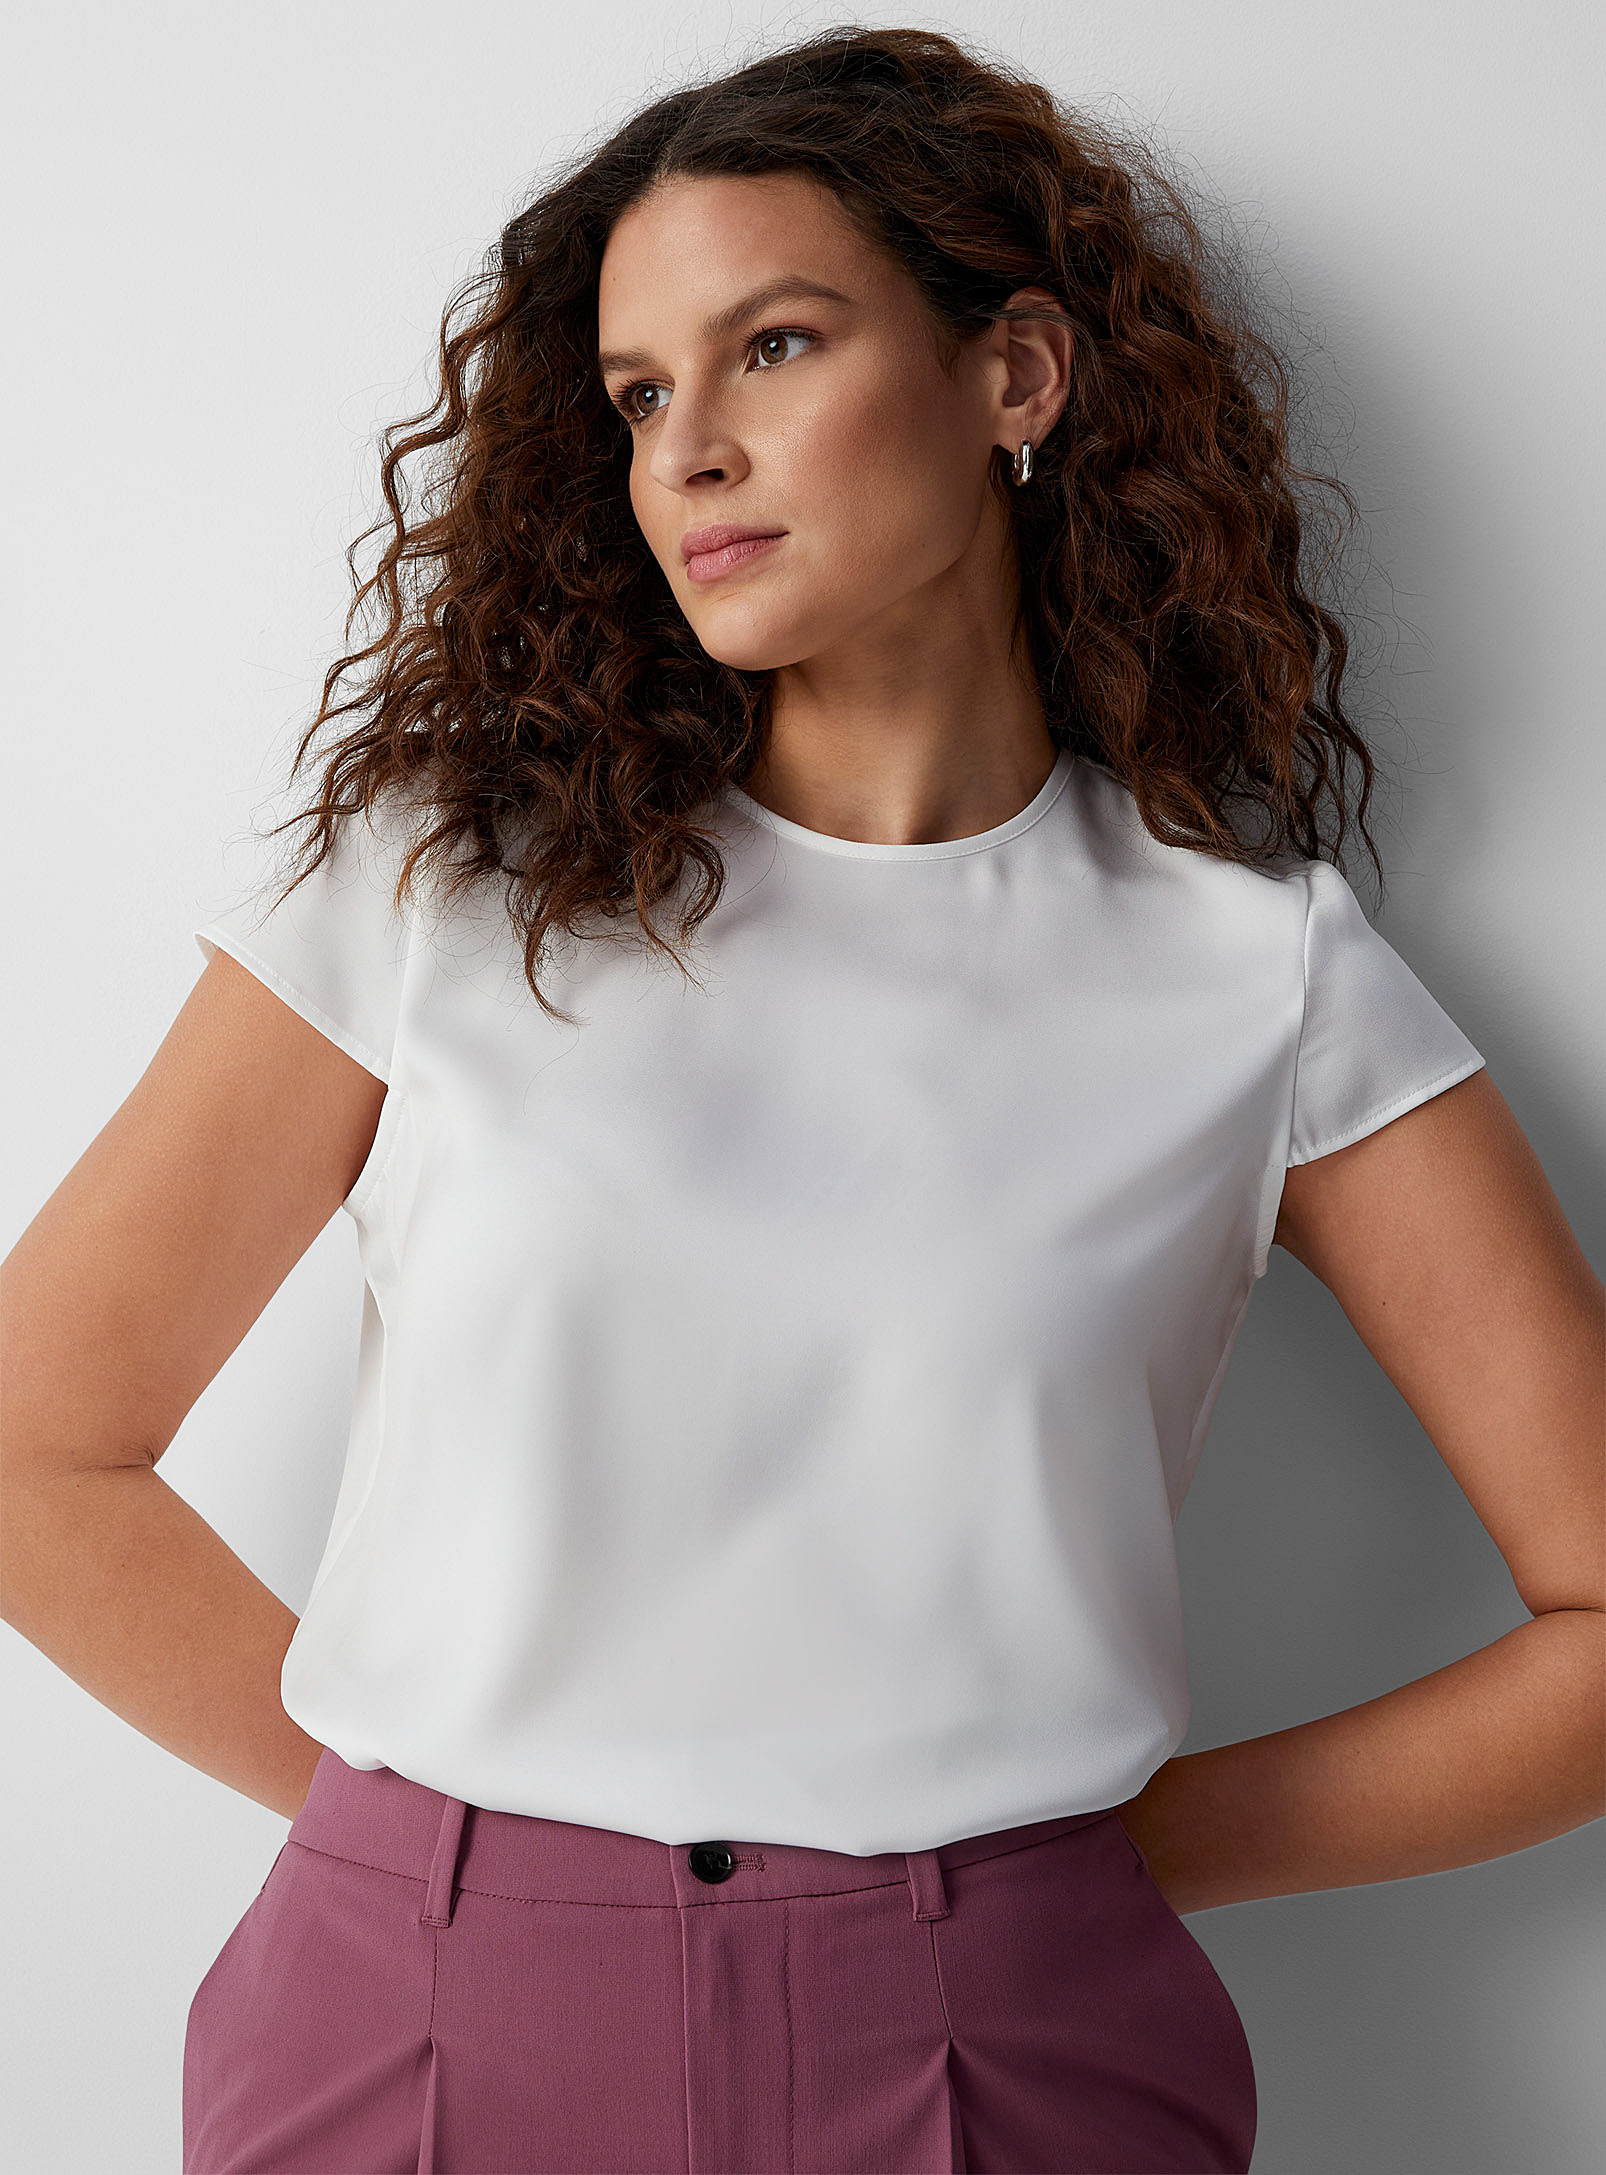 Contemporaine - Women's Satiny cap-sleeve blouse